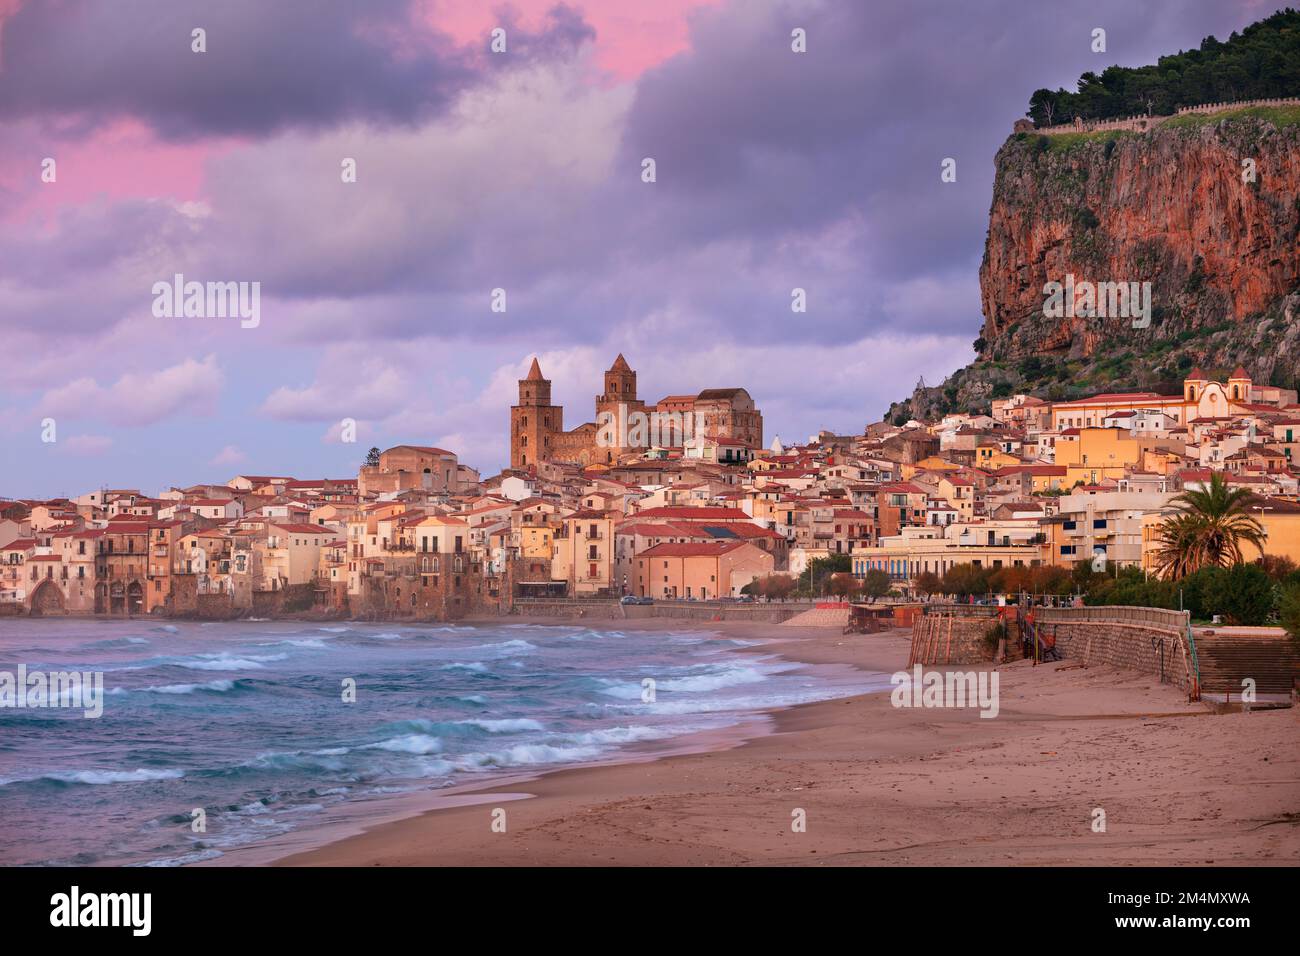 Cefalù, Sicilia, Italia. Immagine di paesaggio urbano se la città costiera Cefalu in Sicilia al tramonto drammatico. Foto Stock